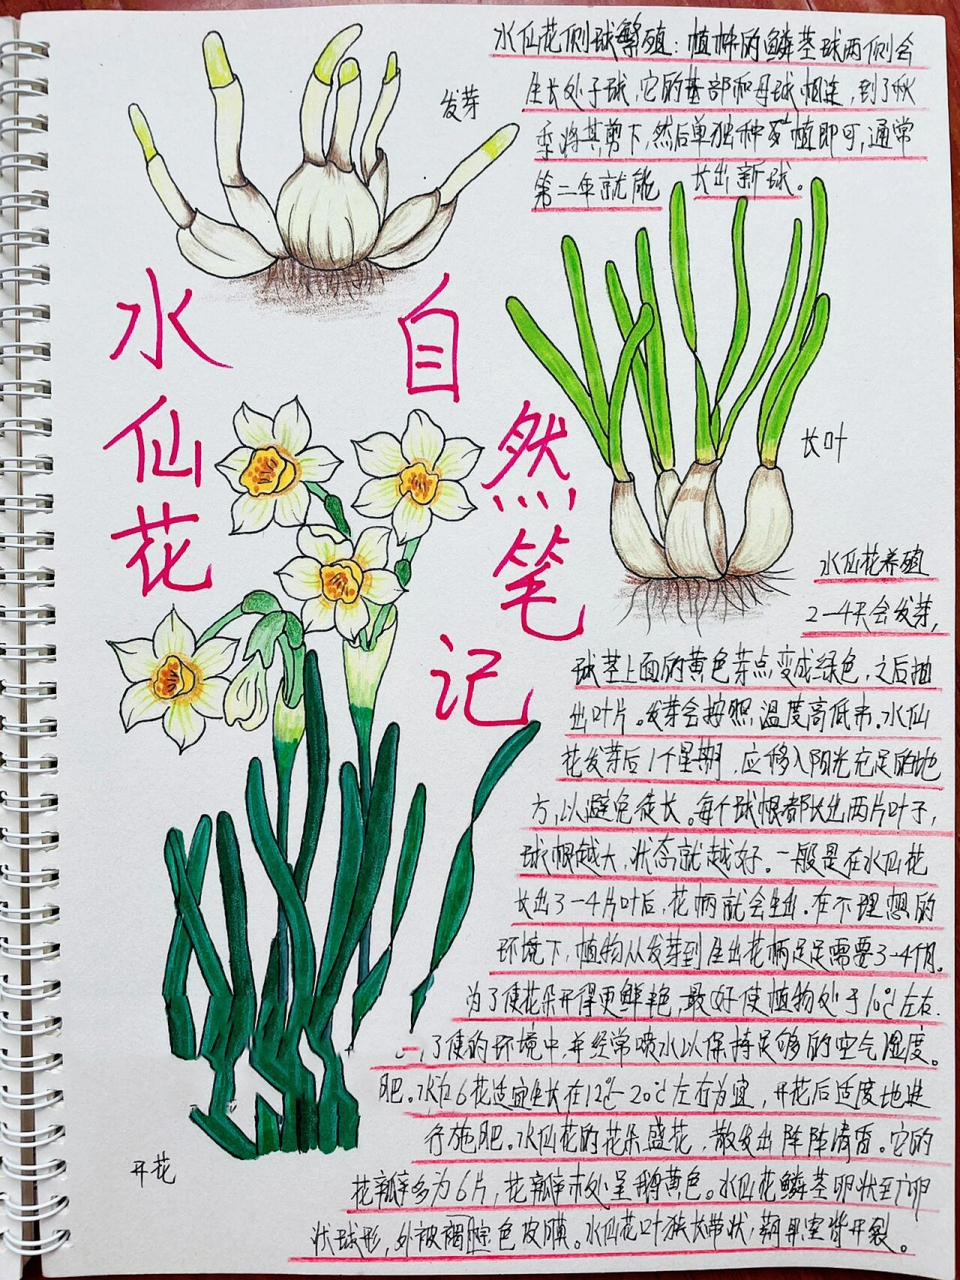 水仙花样子的细节描写图片